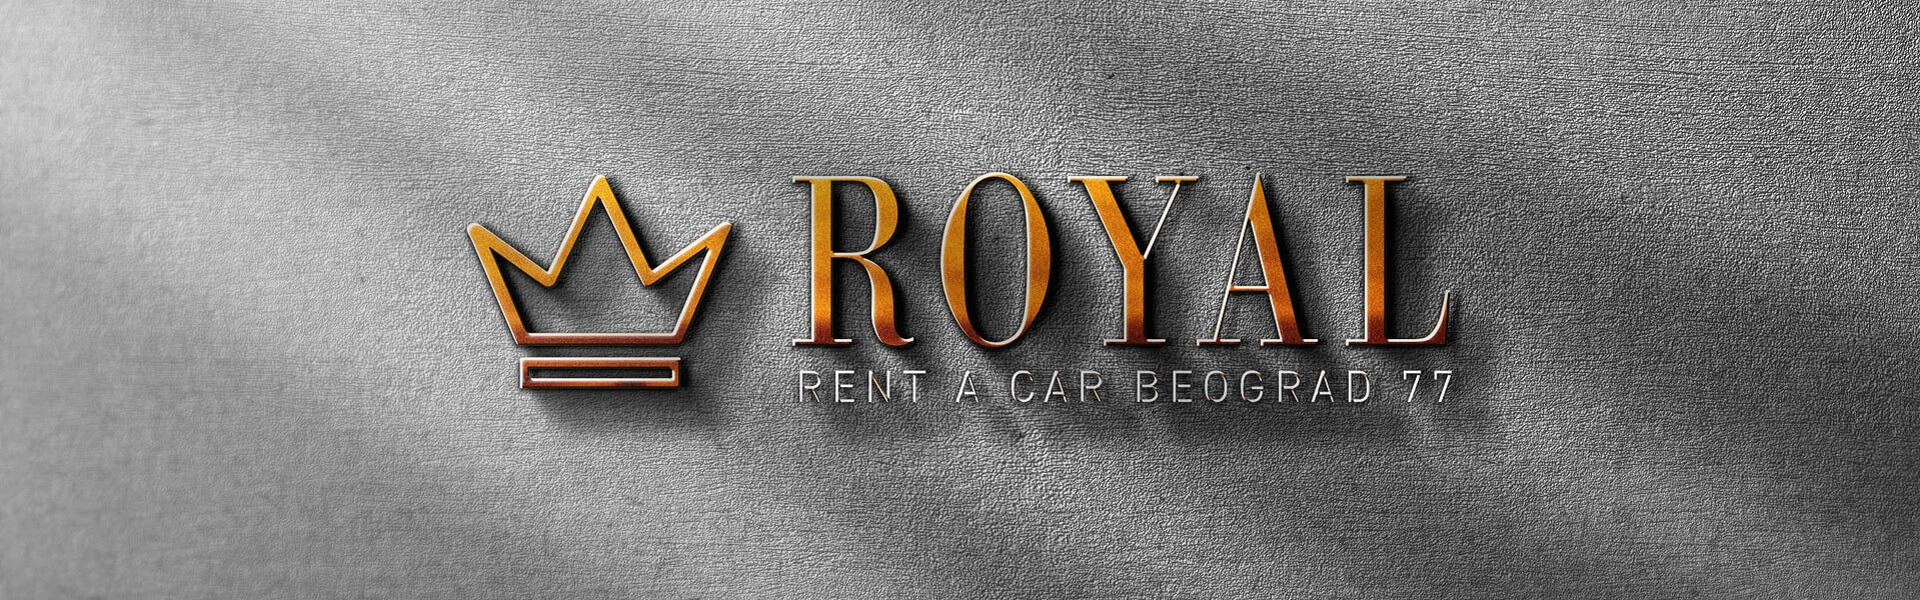 Rent a car Beograd Royal | Rent a Car Beograd